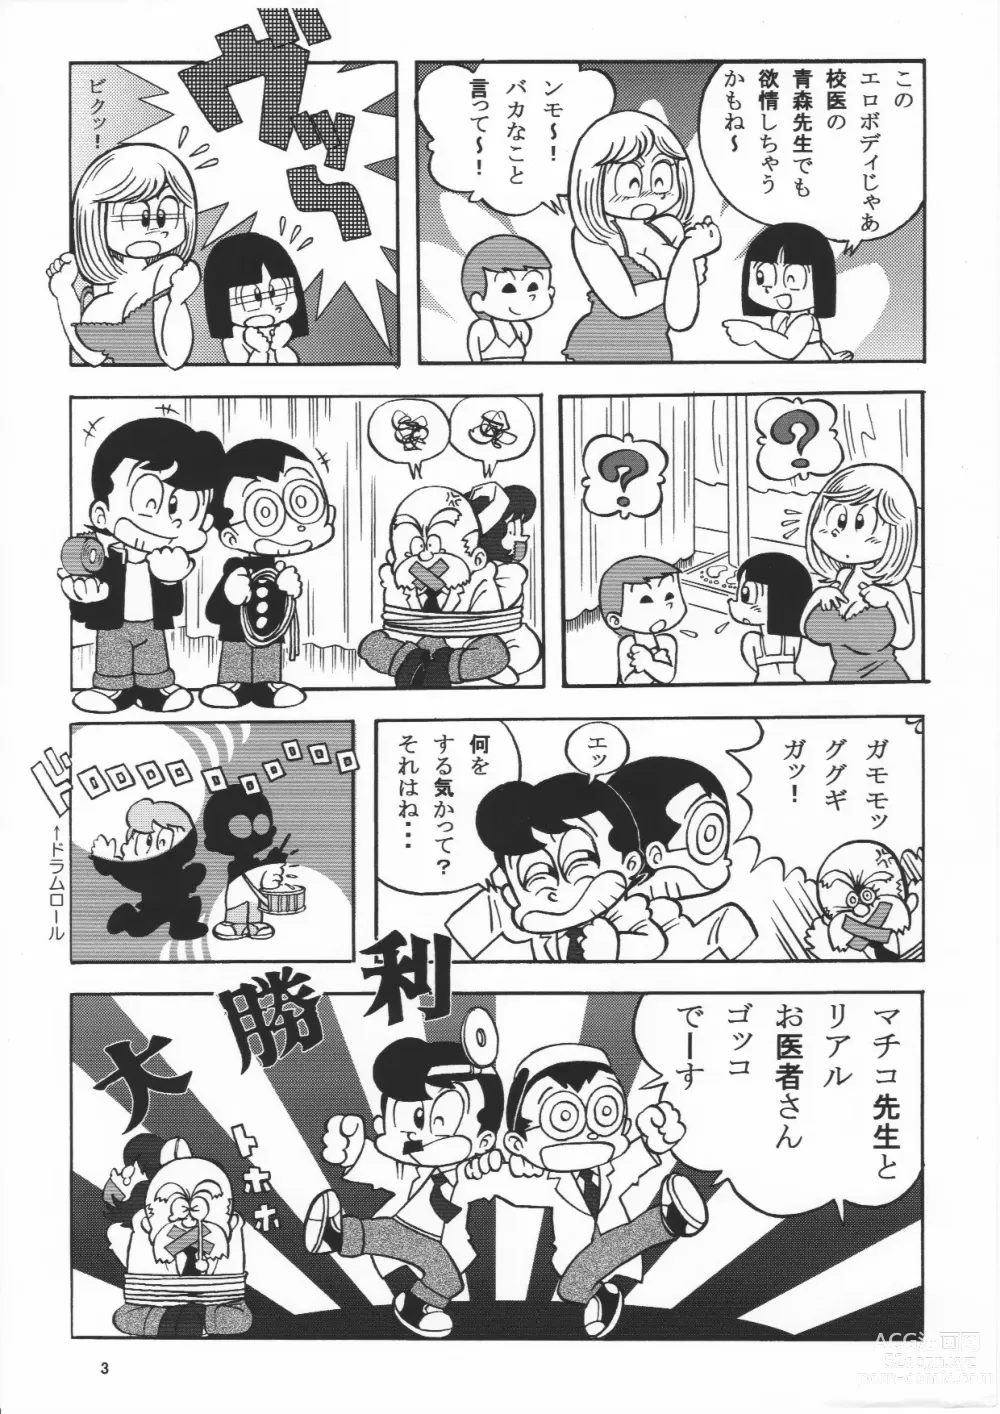 Page 3 of doujinshi (Maicching Machiko Sensei)